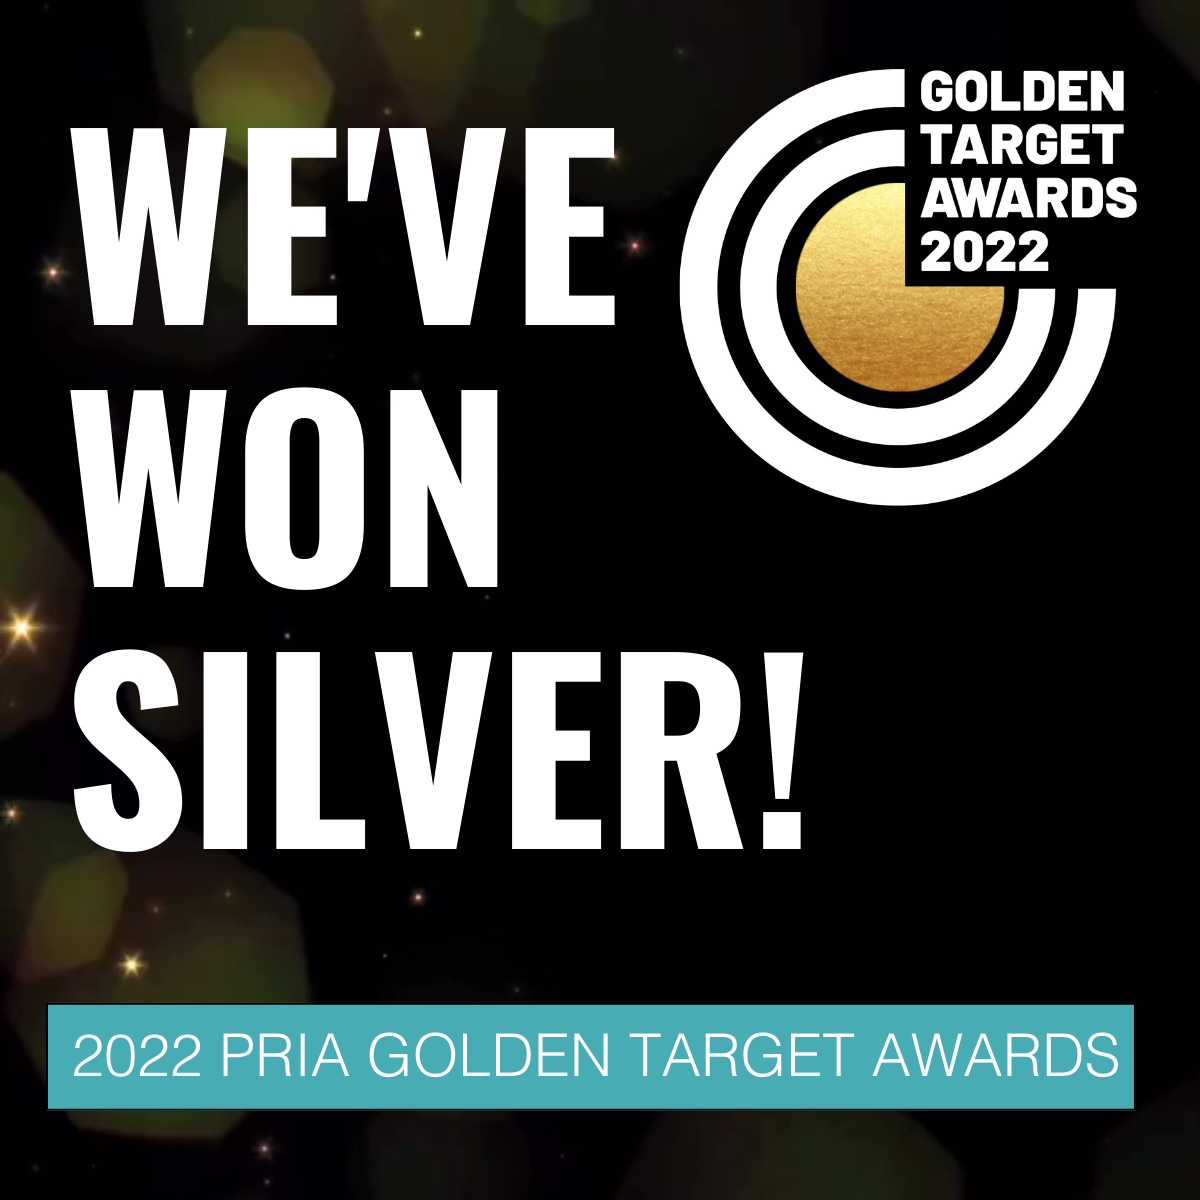 Square tile reading "We've won Silver! 2022 PRIA Golden Target Awards"